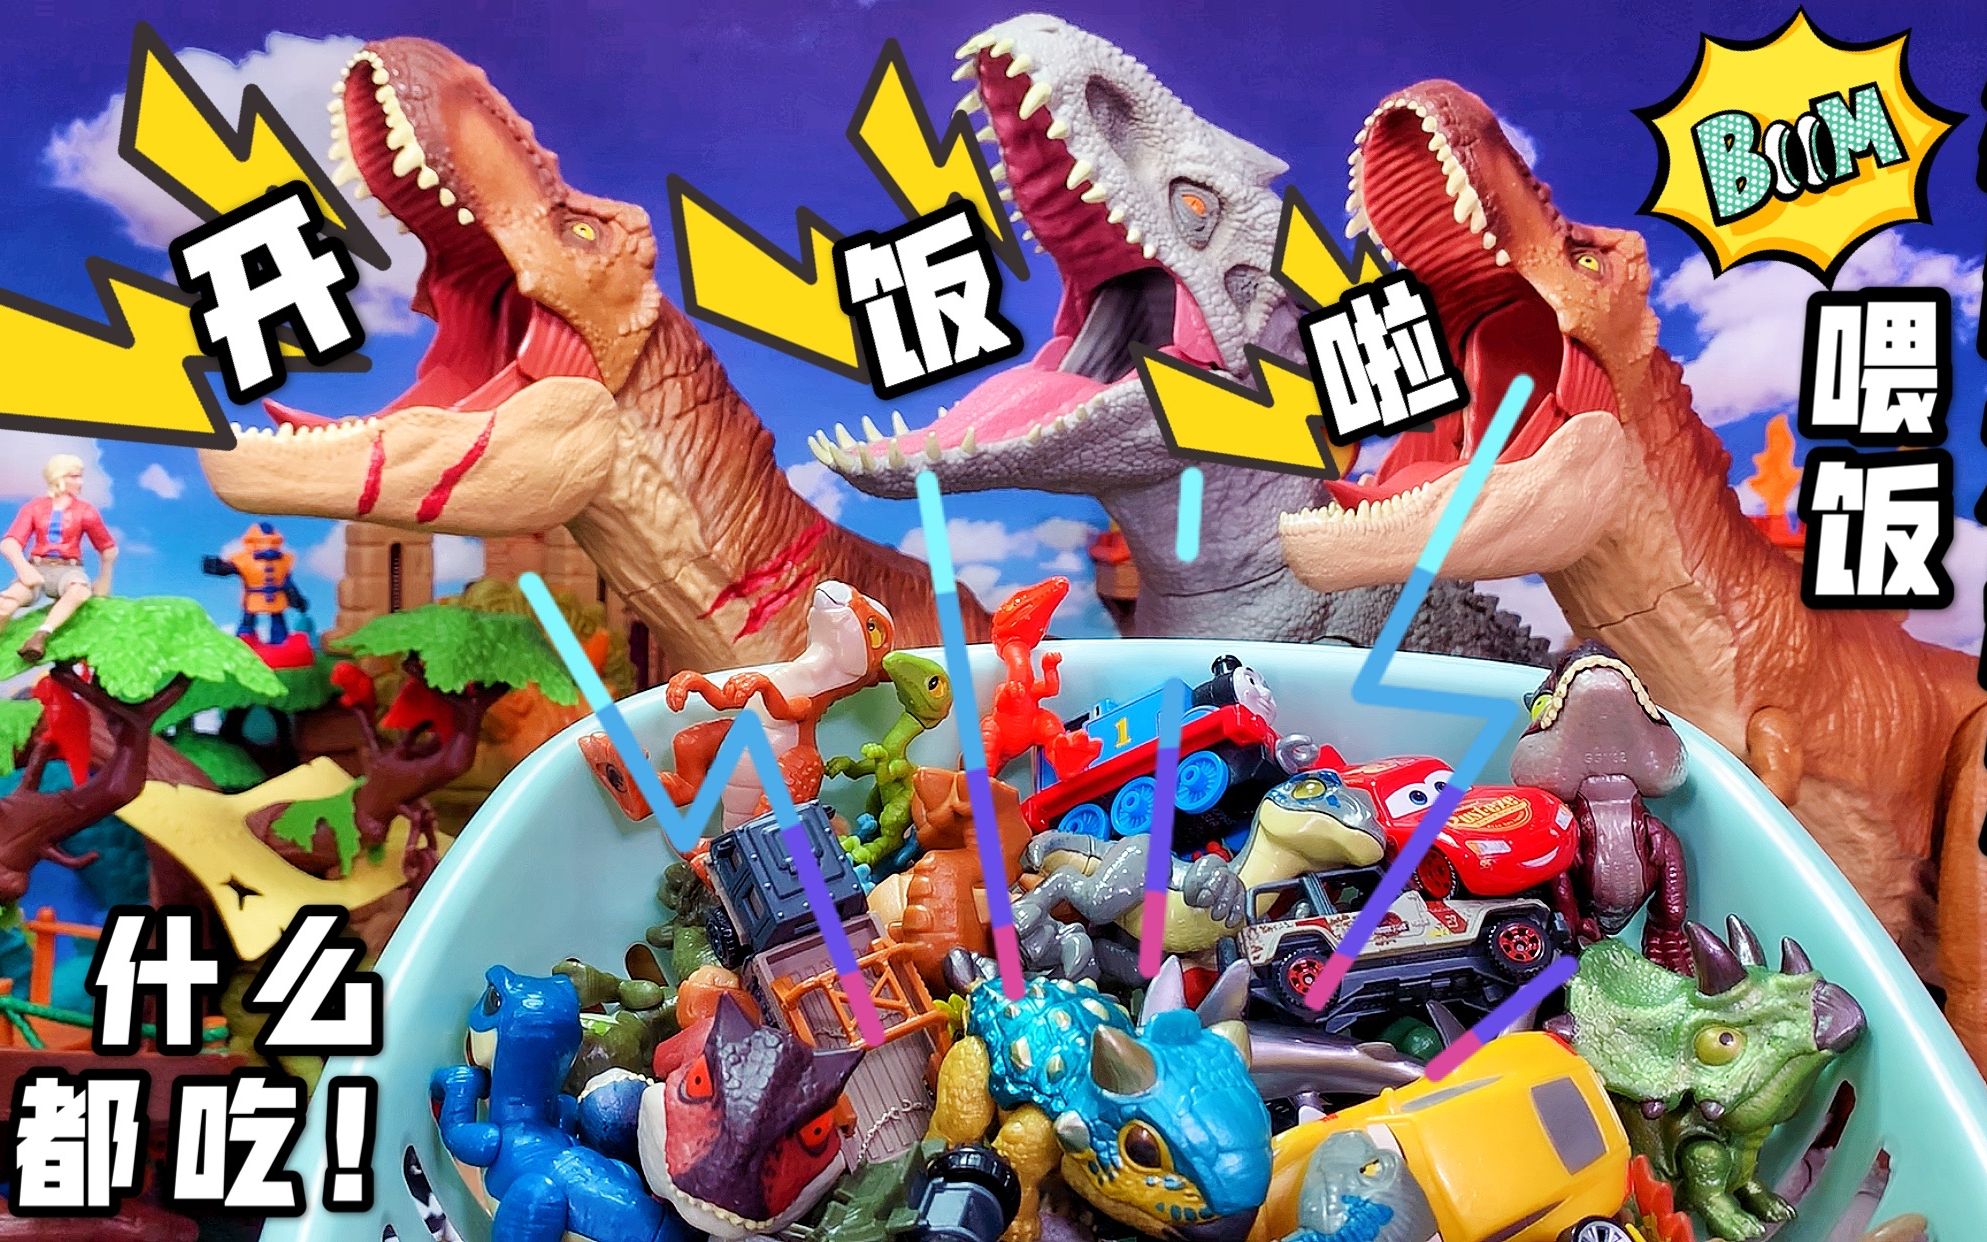 恐龙蛋考古挖掘益智科教玩具批发 儿童DIY考古恐龙化石 幼儿礼品-阿里巴巴